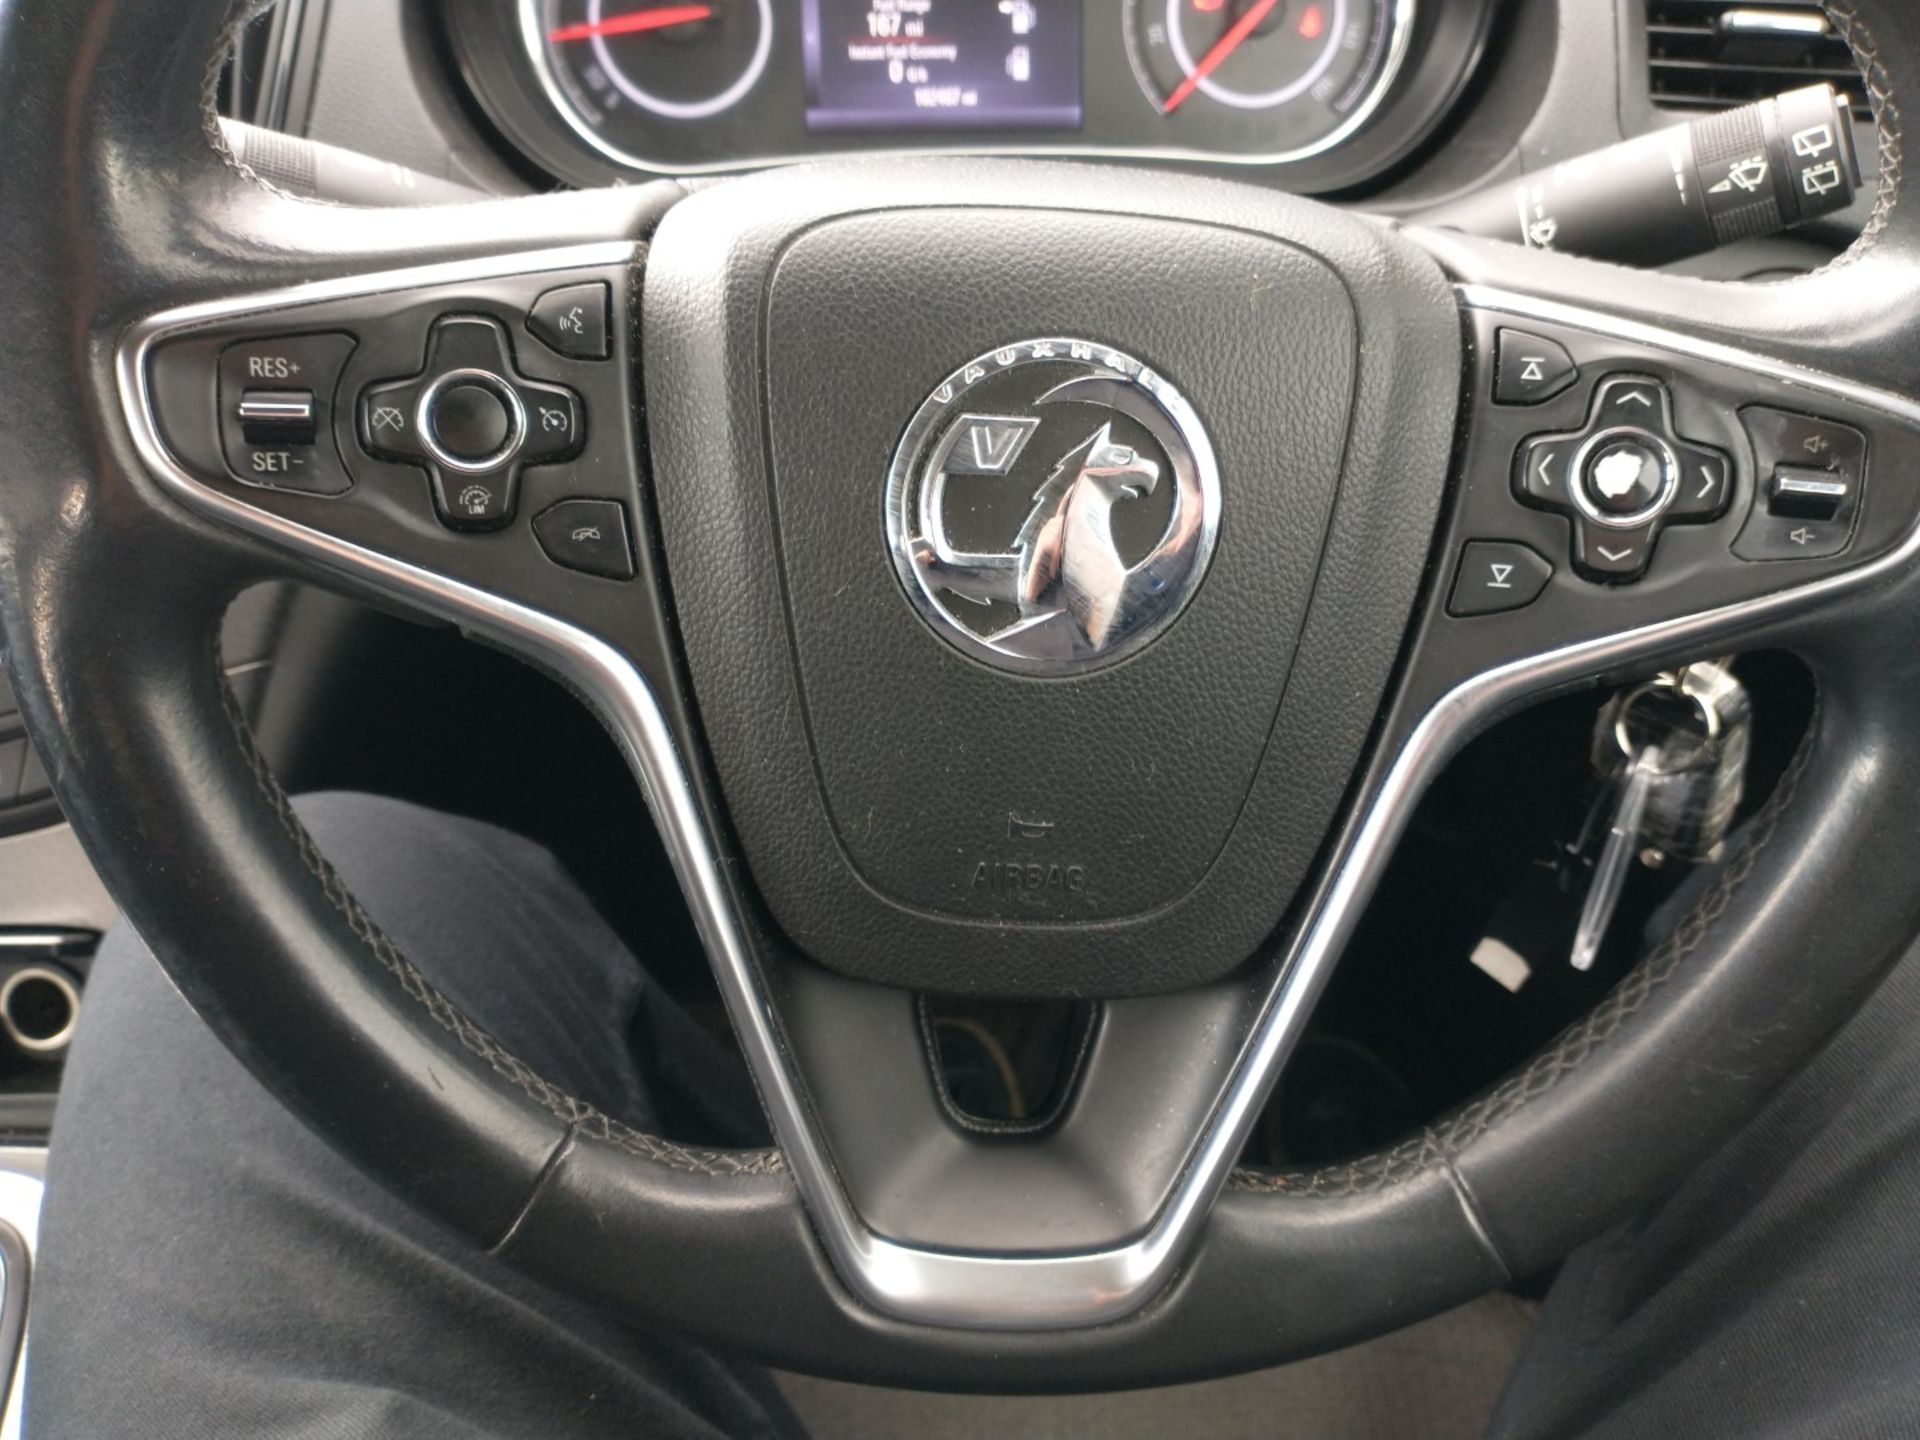 2014 Vauxhall Insignia 2.0 CDTI Design Nav 5 Door Hatchback - CL505 - NO VAT ON THE HAMMER - - Image 9 of 13